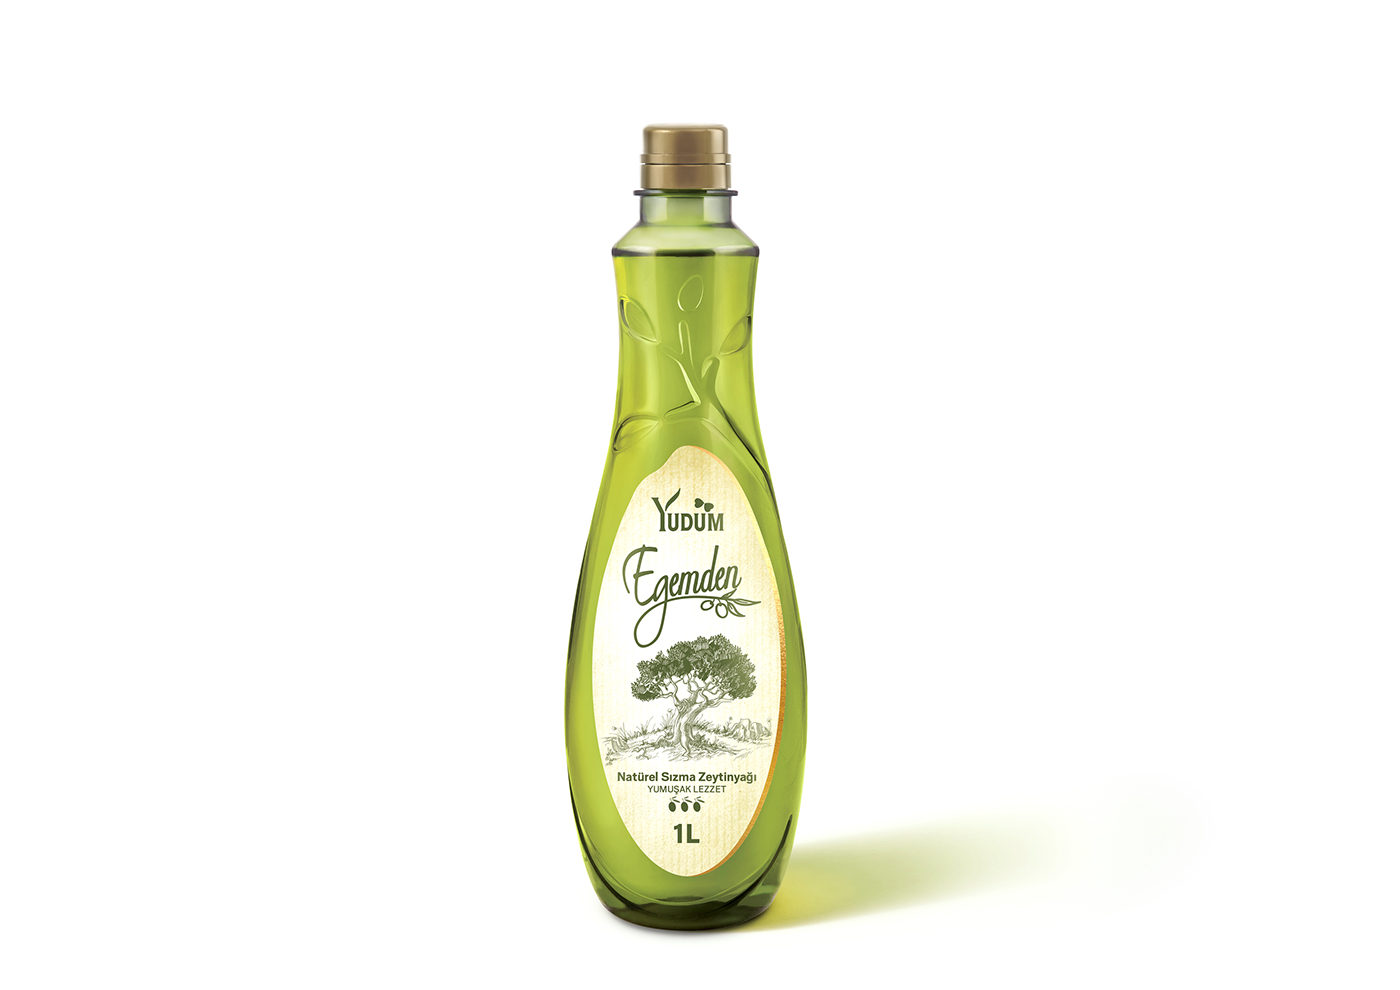 Olive Oil olive oil packaging Olive Olive Gourmet olive oil premium olive oil design olive oil bottle olive